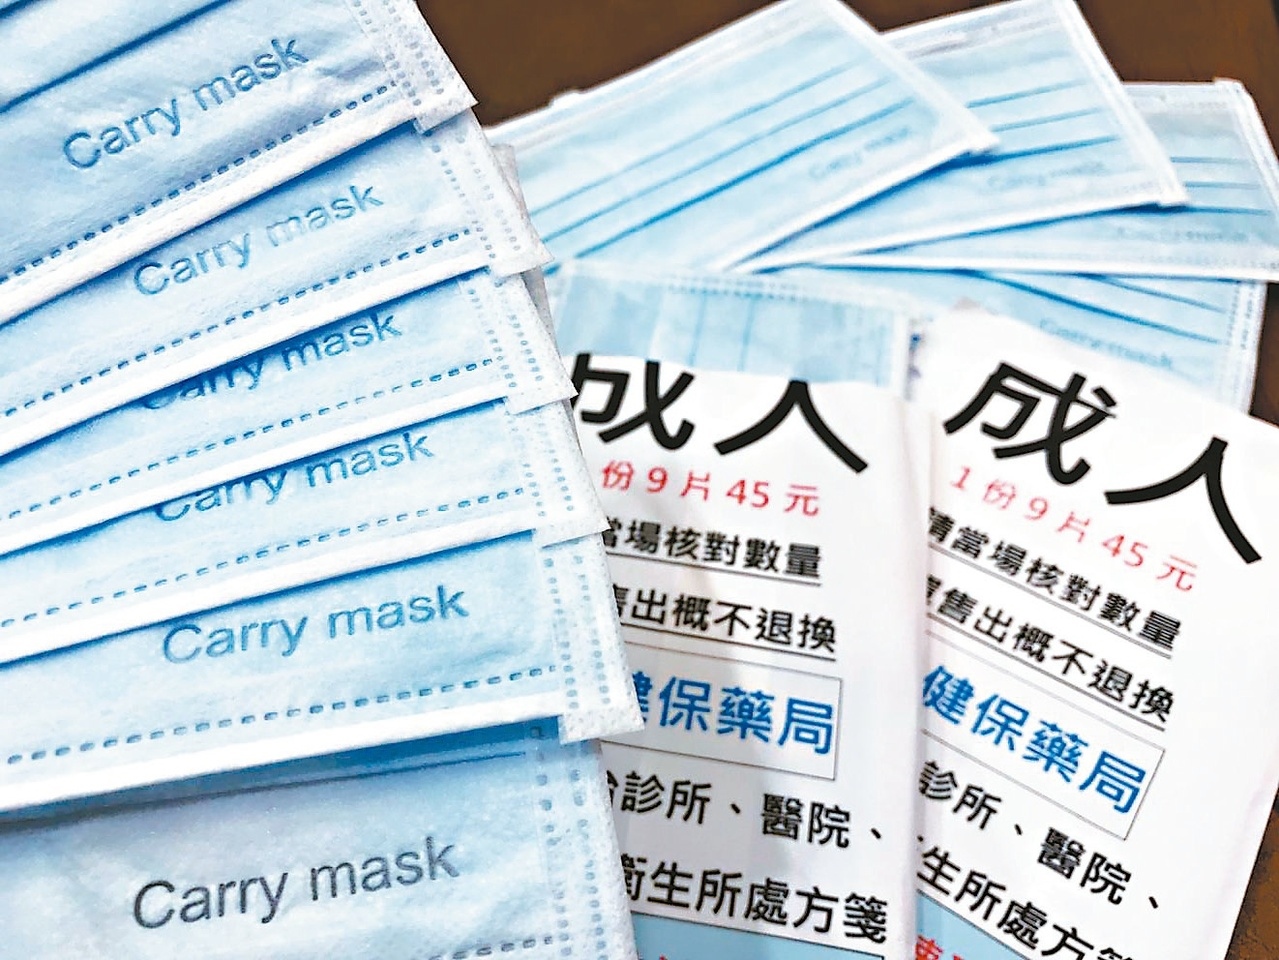 問題口罩印有「Carry mask」鋼印，可於九月四日至十一日至全國任何一家販售實名制的藥局或衛生所換貨。記者陳正興／攝影